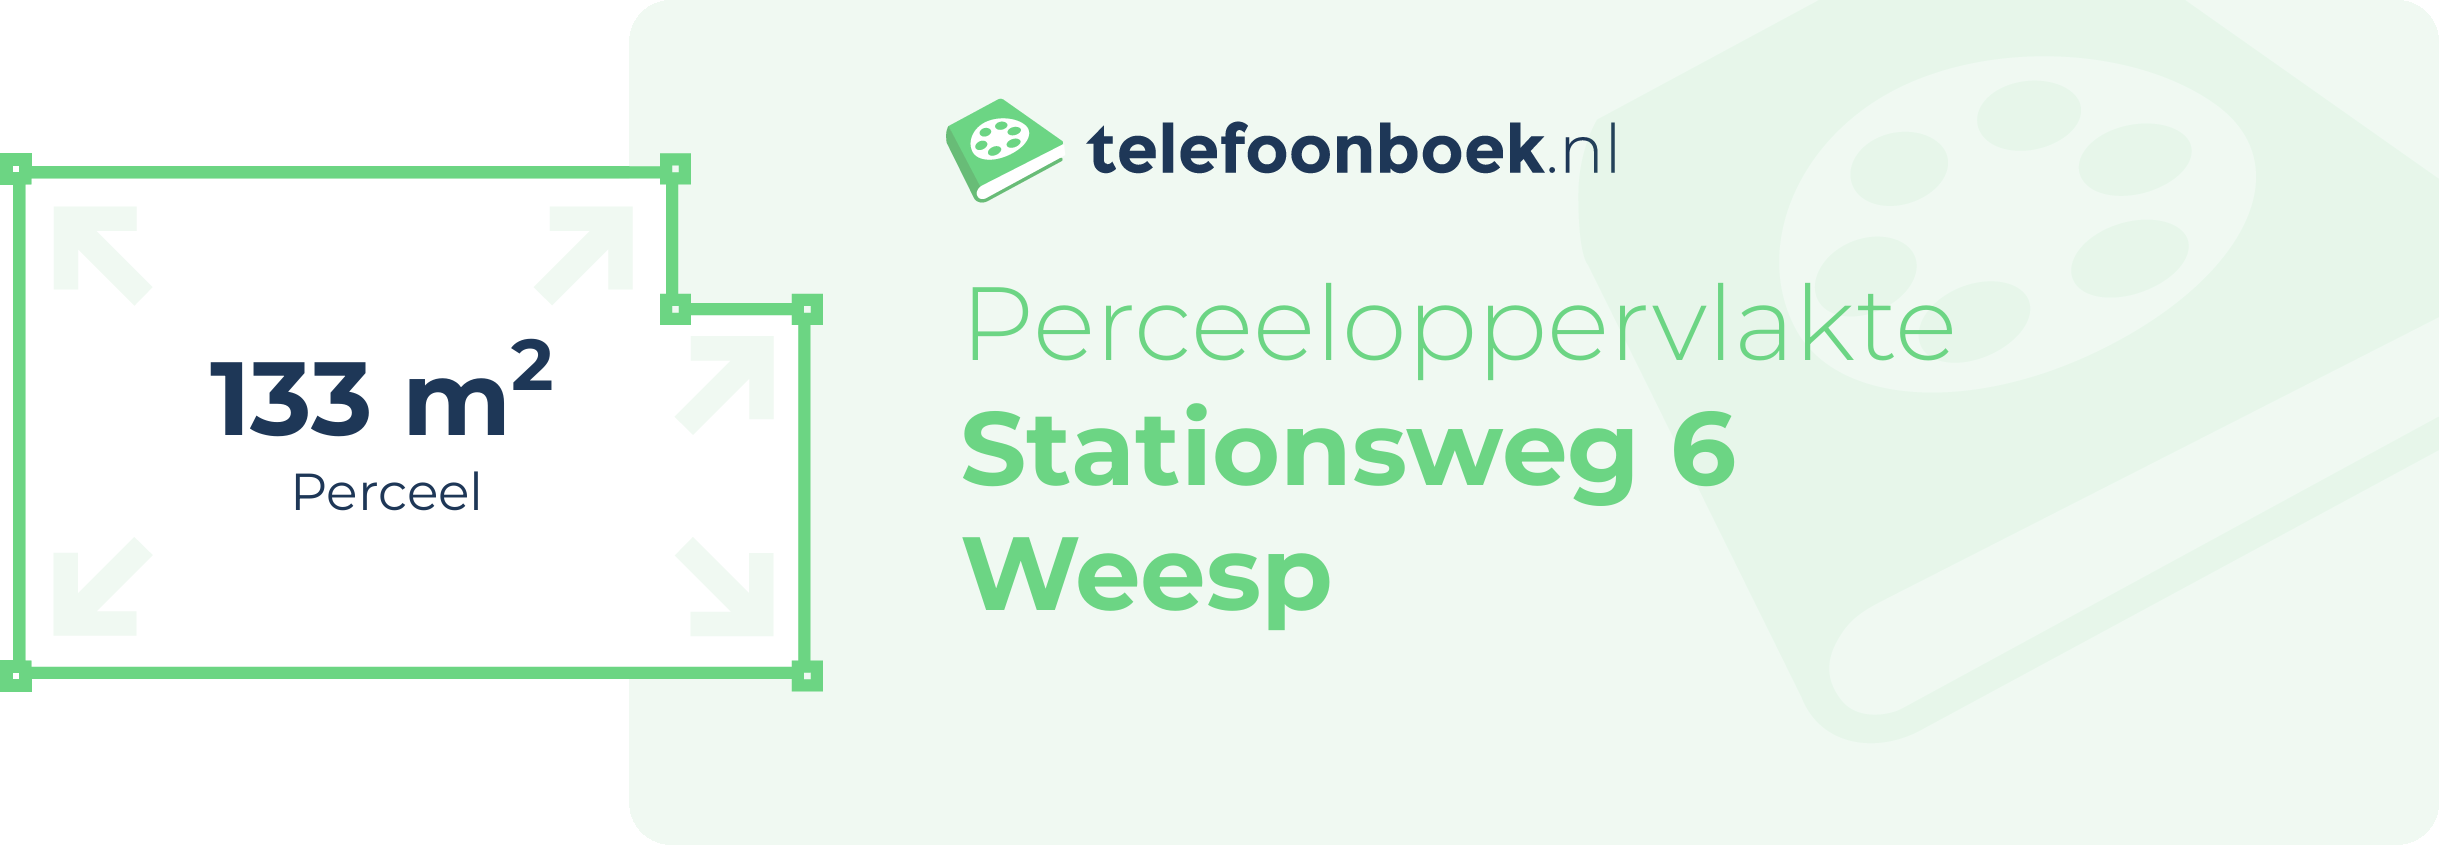 Perceeloppervlakte Stationsweg 6 Weesp